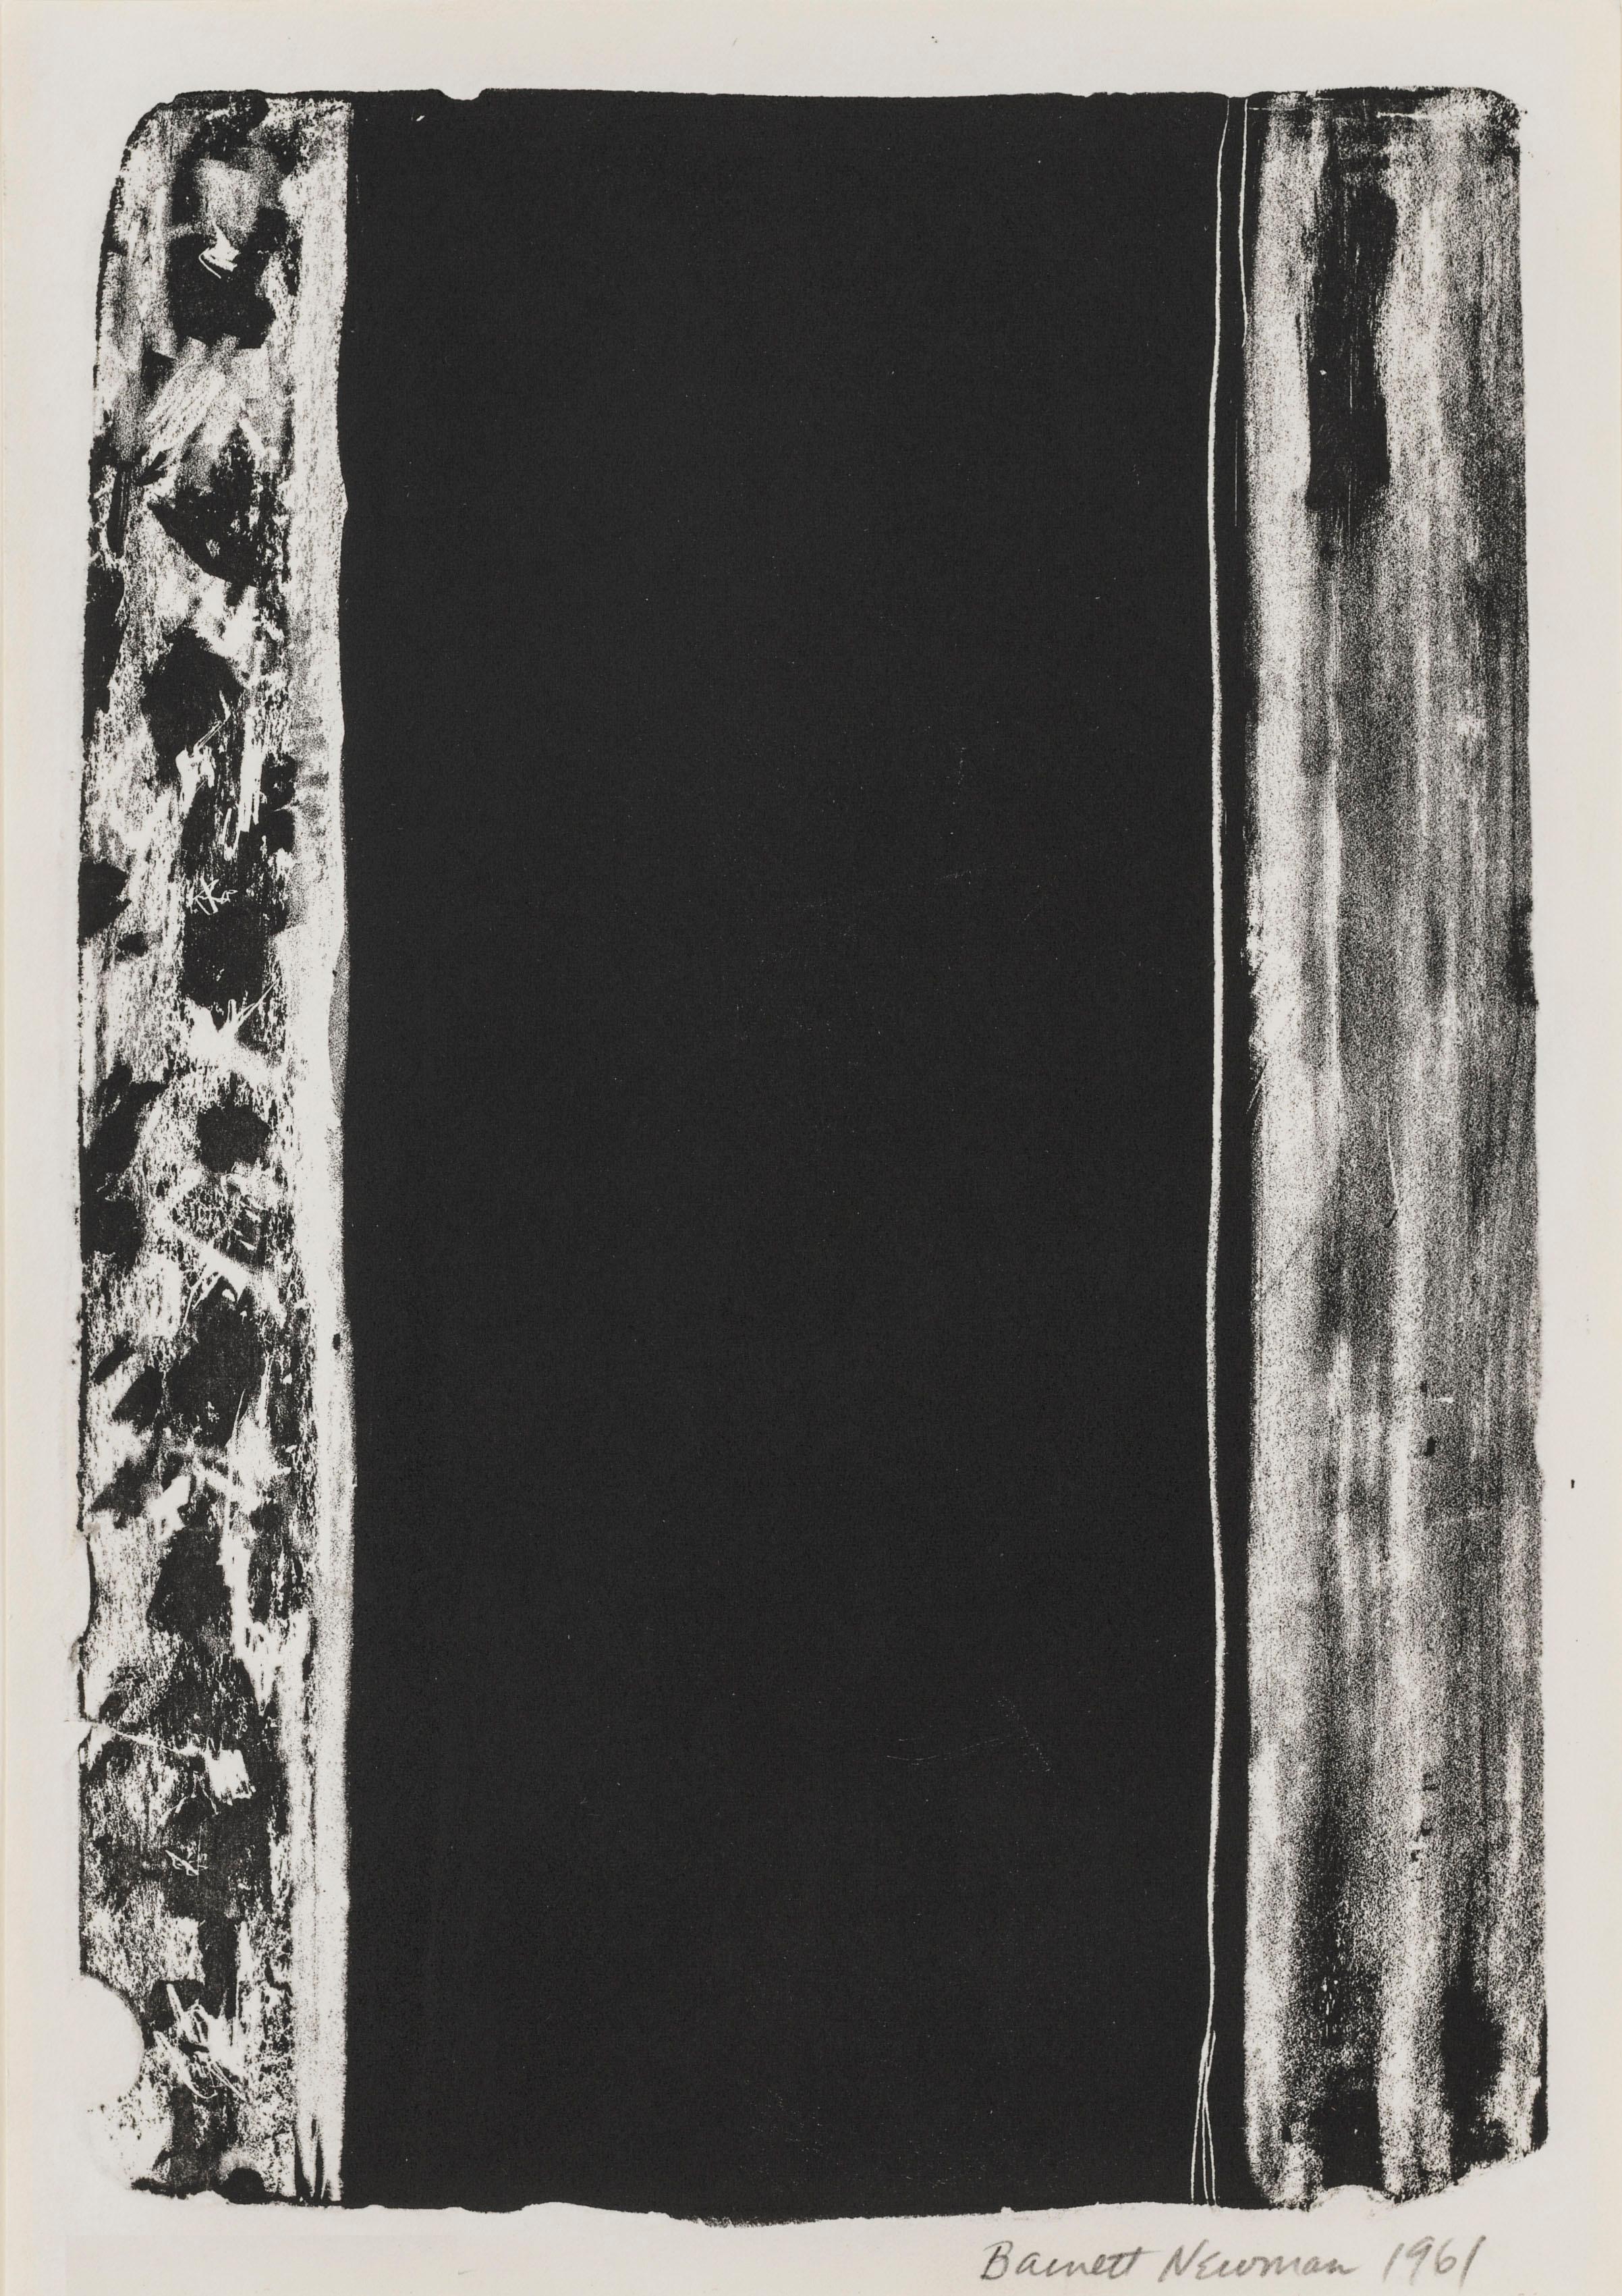 Barnett Newman Abstract Print – Unbenannt